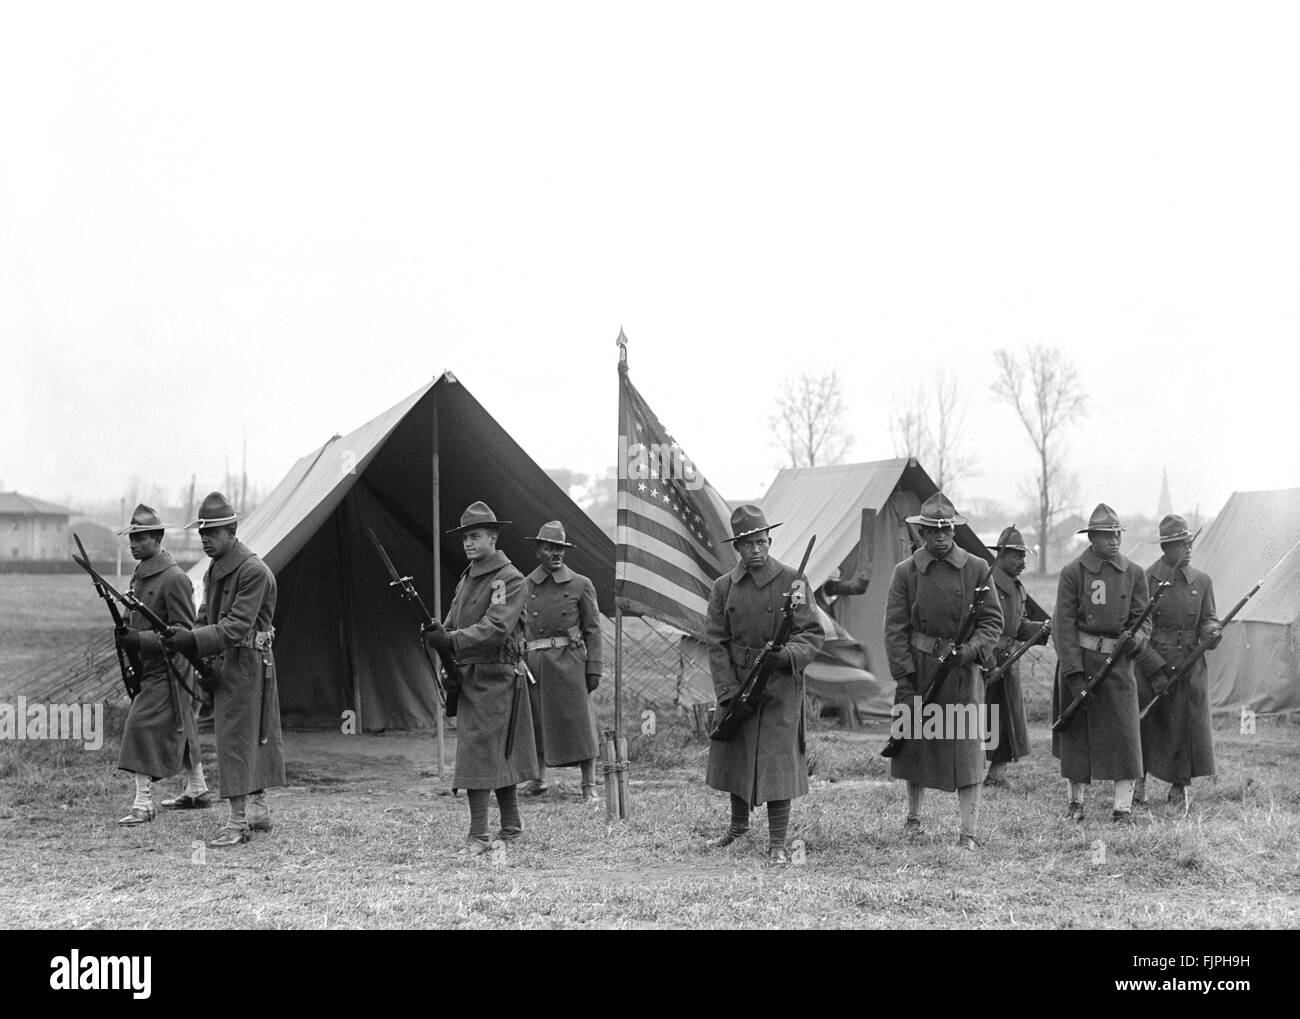 Soldats américains avec des baïonnettes apposées sur les fusils de protection des tentes de l'armée et drapeau américain, Harris & Ewing, 1917 Banque D'Images